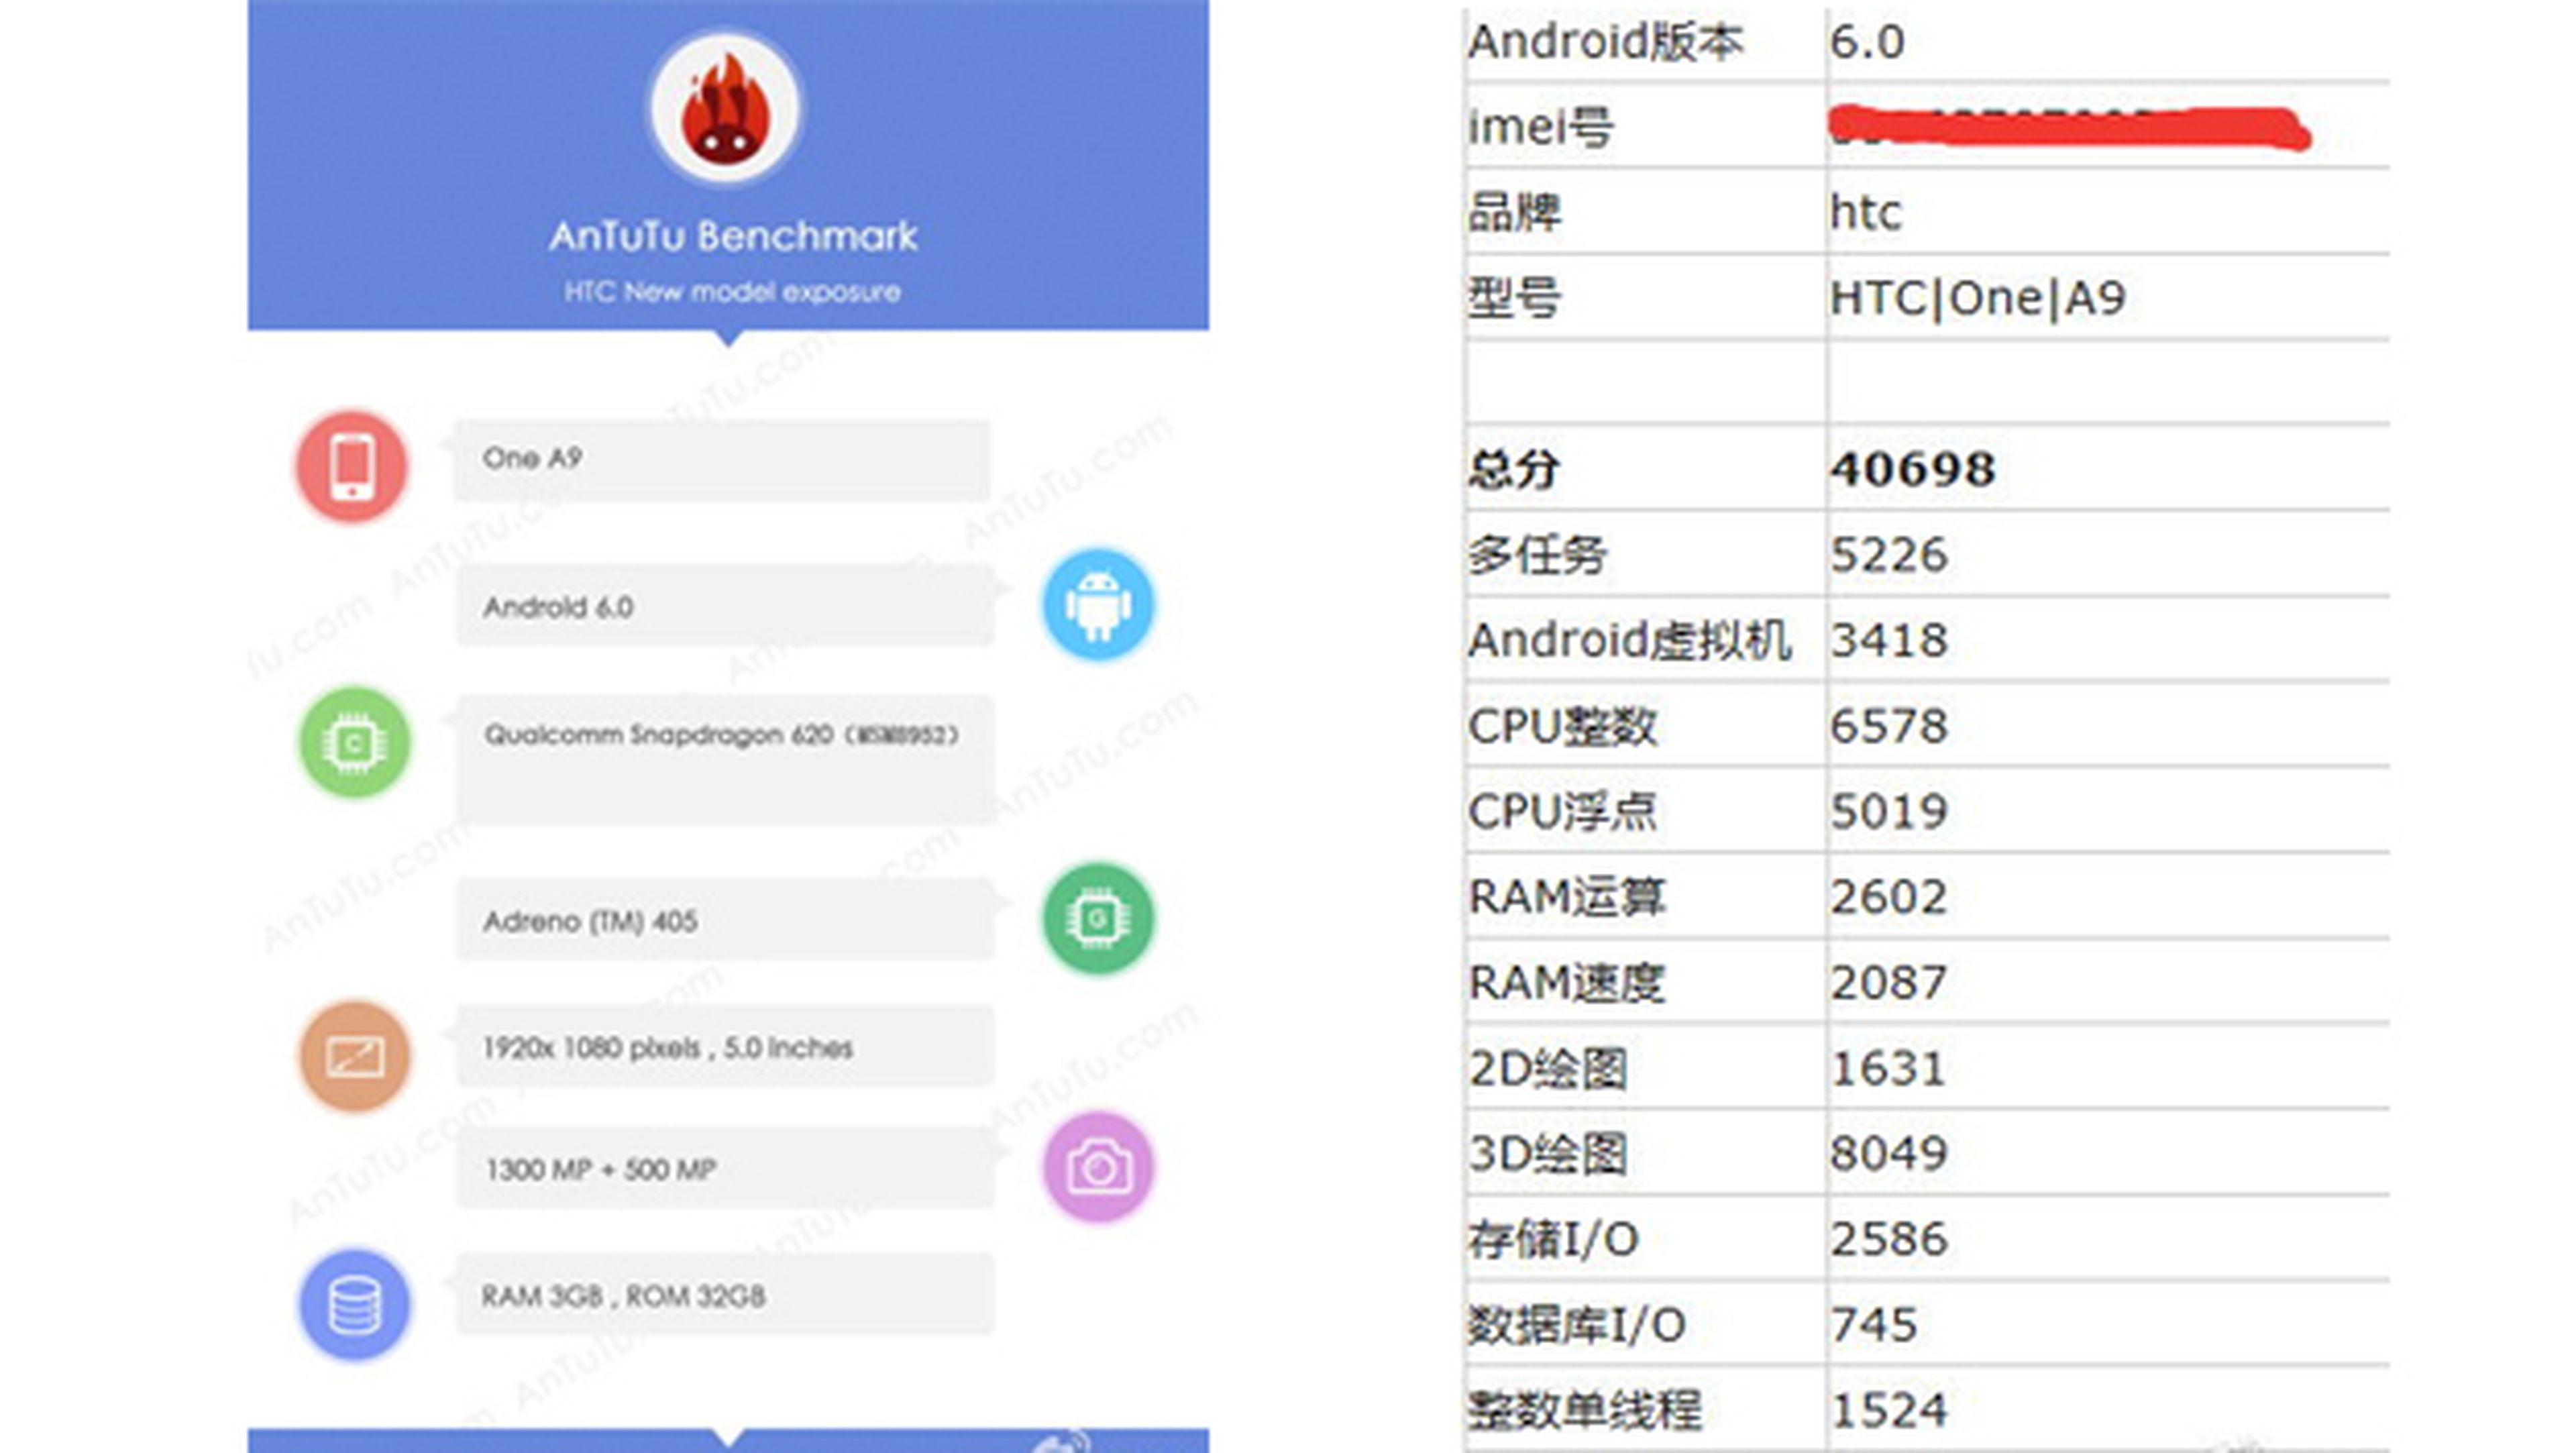 HTC One A9, imágenes en mano y prueba de rendimiento en AnTuTu